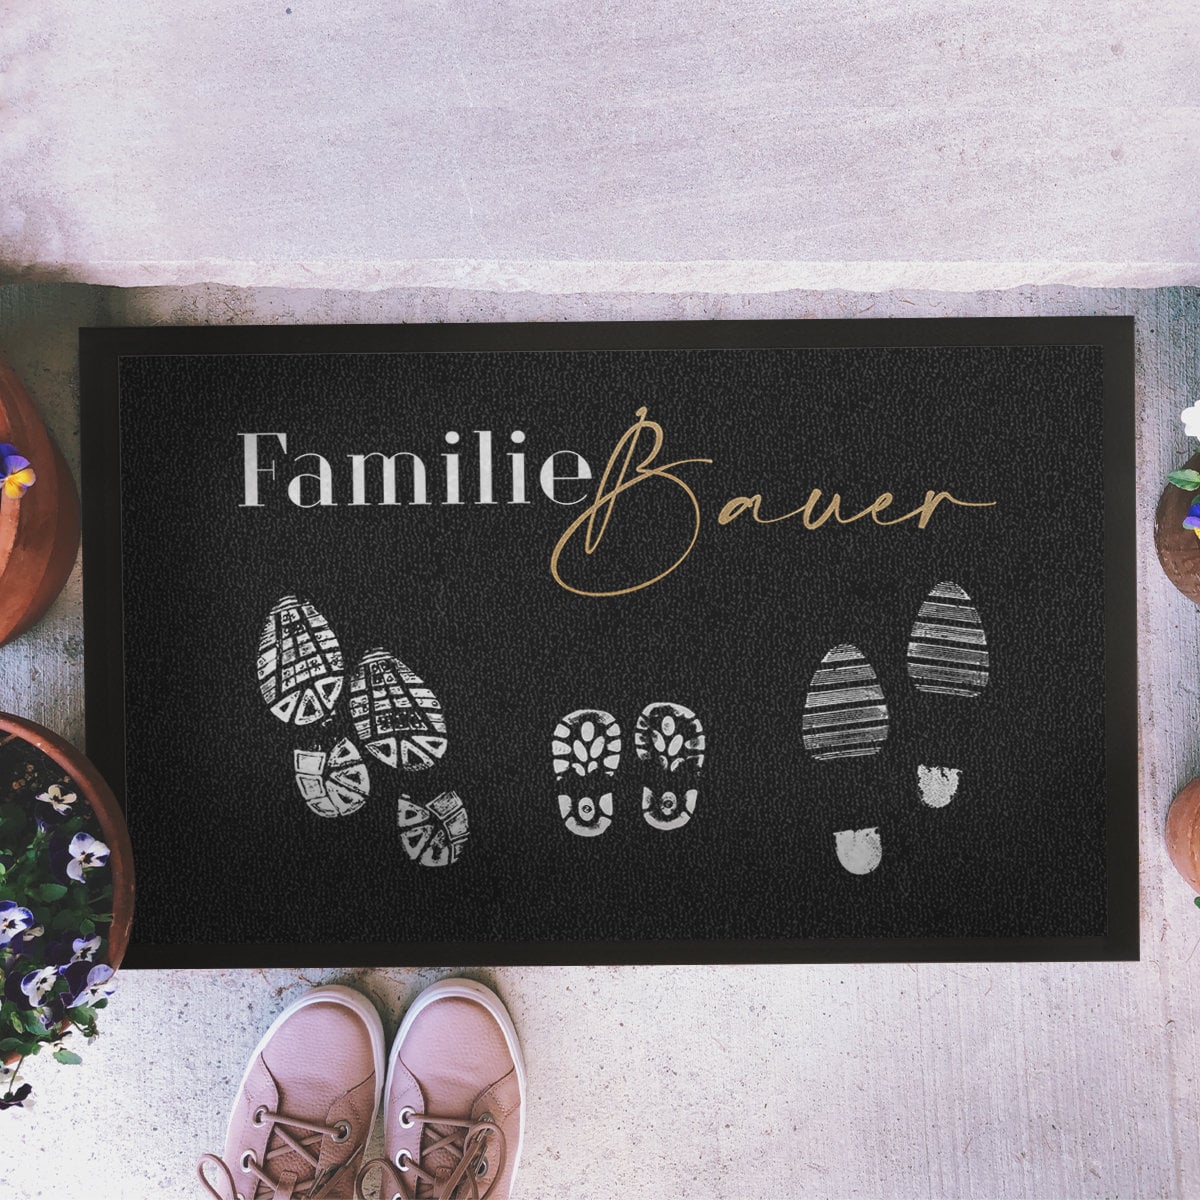 individuelle Fußmatte Fußabstreicher Familie "Shoeprints" - personalisierbar mit Familienname und Familienmitgliedern!